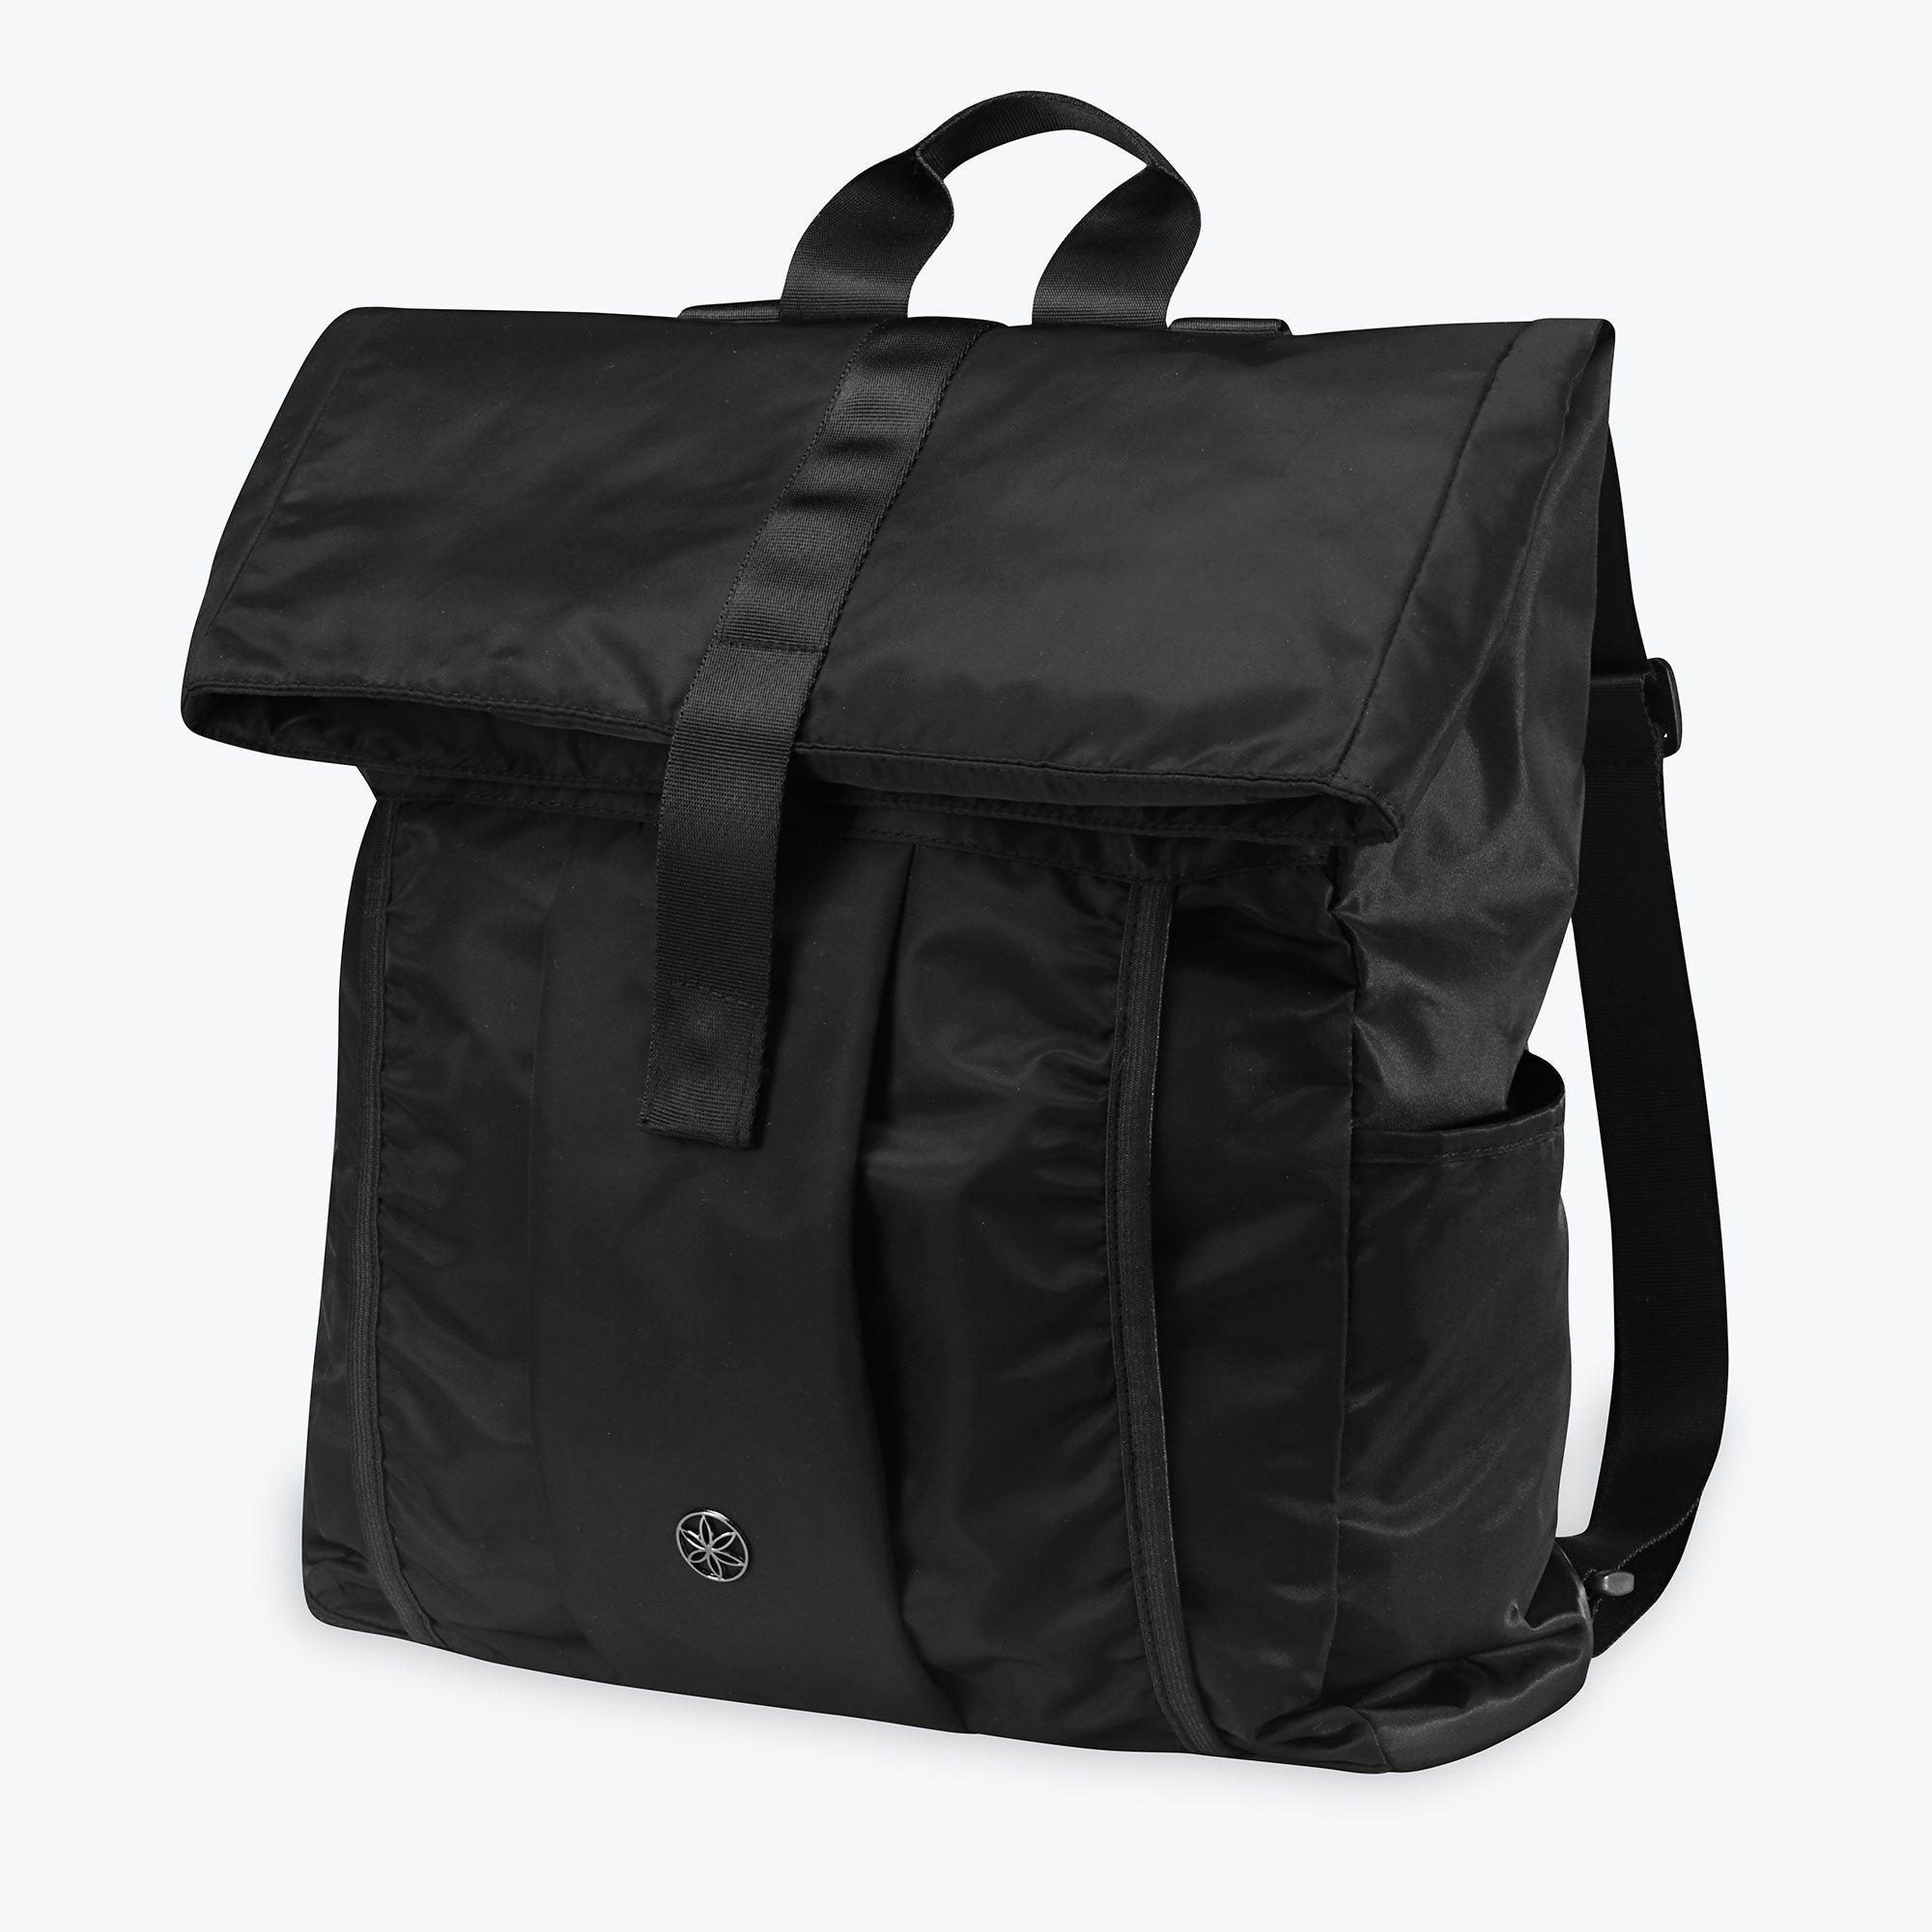 nike vapor elite 2.0 graphic baseball backpack